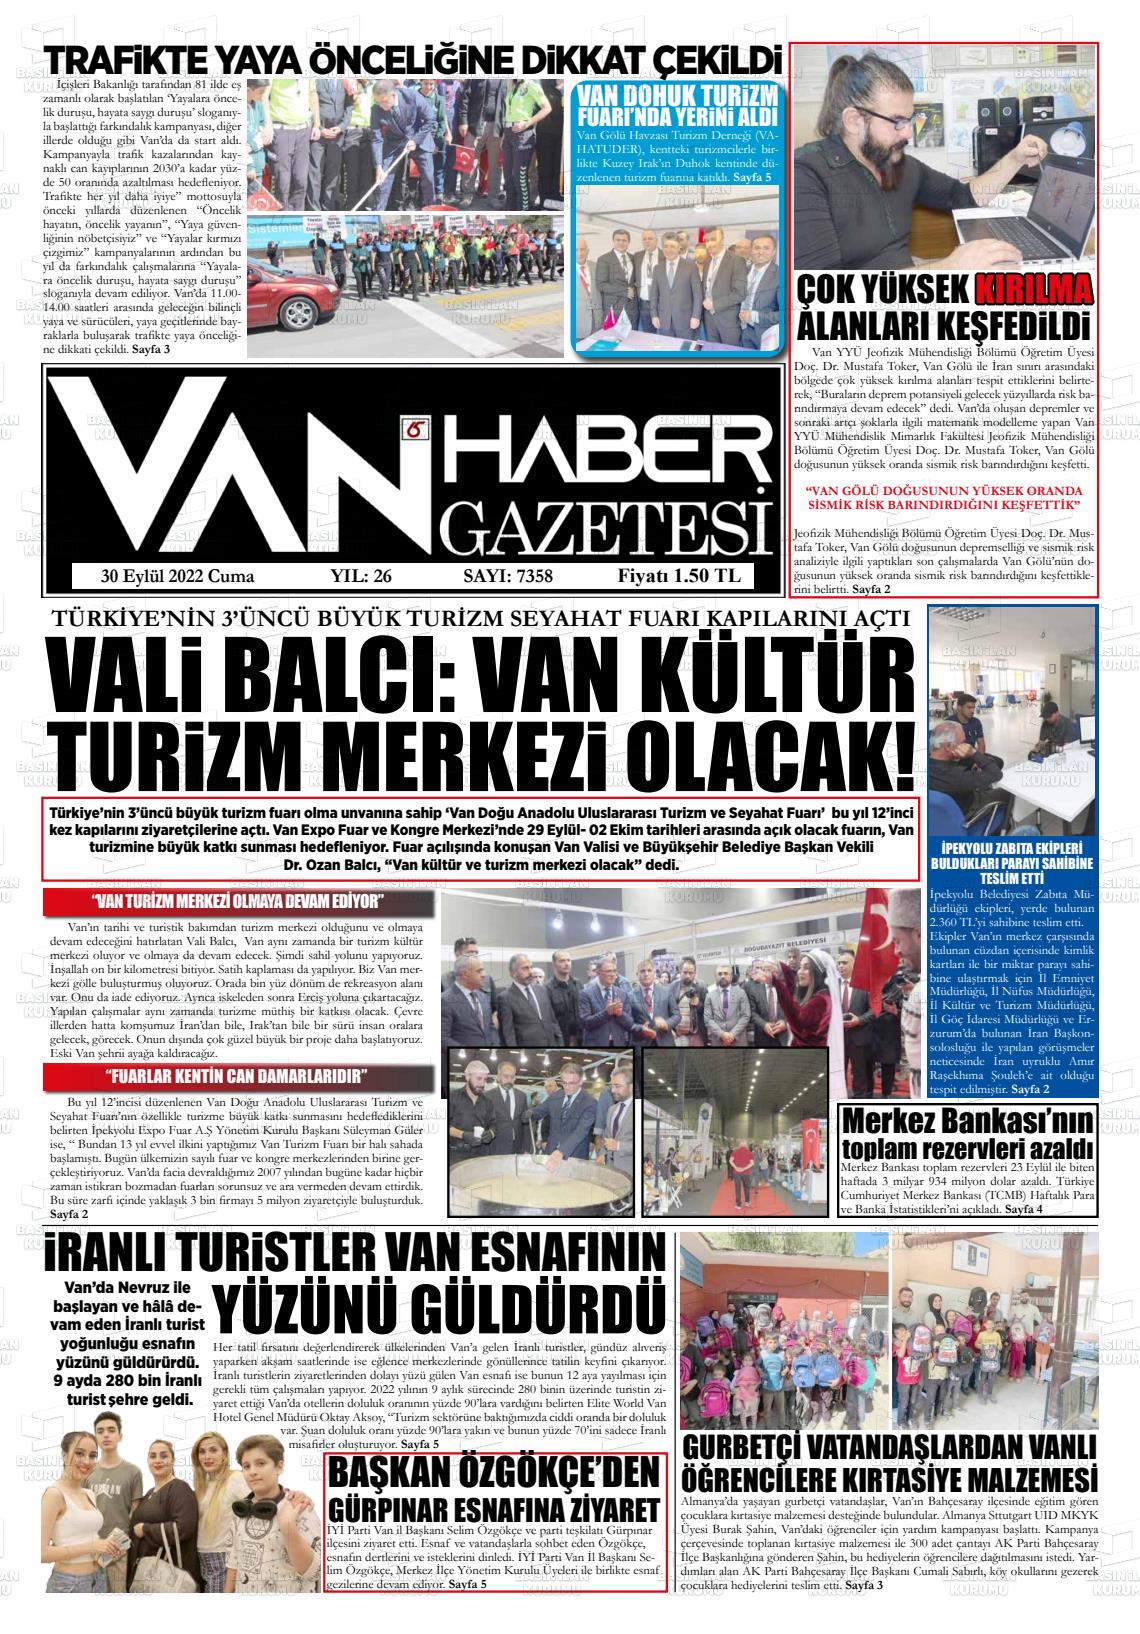 30 Eylül 2022 Van Prestij Gazete Manşeti